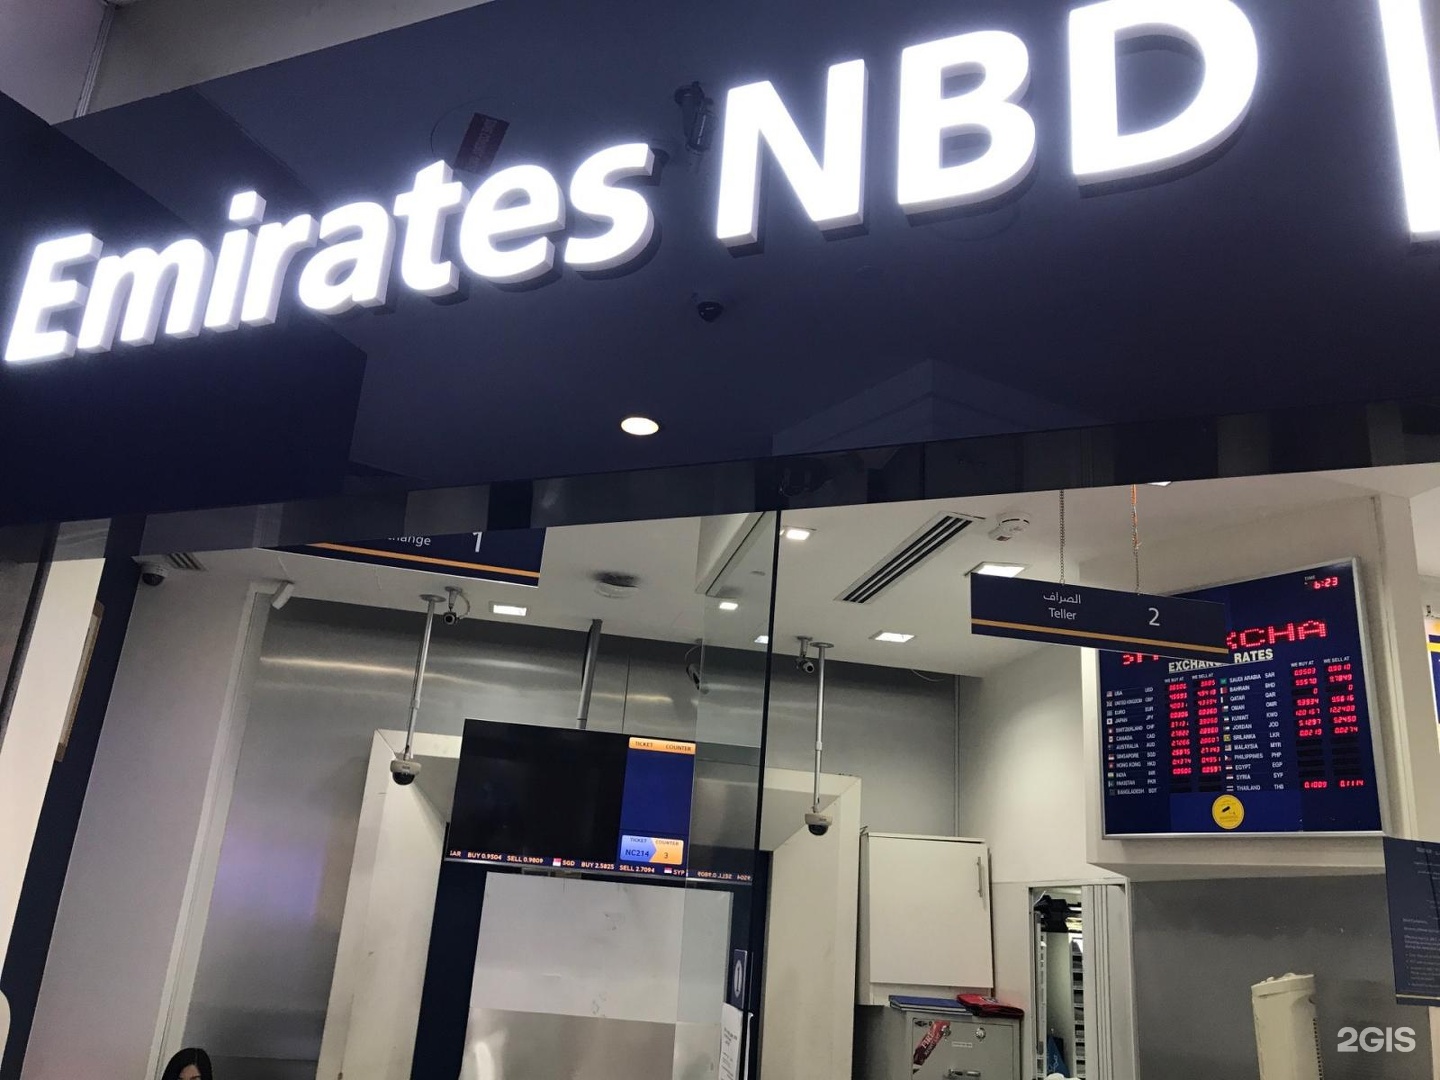 Emirates nbd bank. Emirates NBD Bank Dubai. Emirates NBD карта. Emirates NBD Bank Скриншот. Emirates NBD офис в Москве отделение банка.